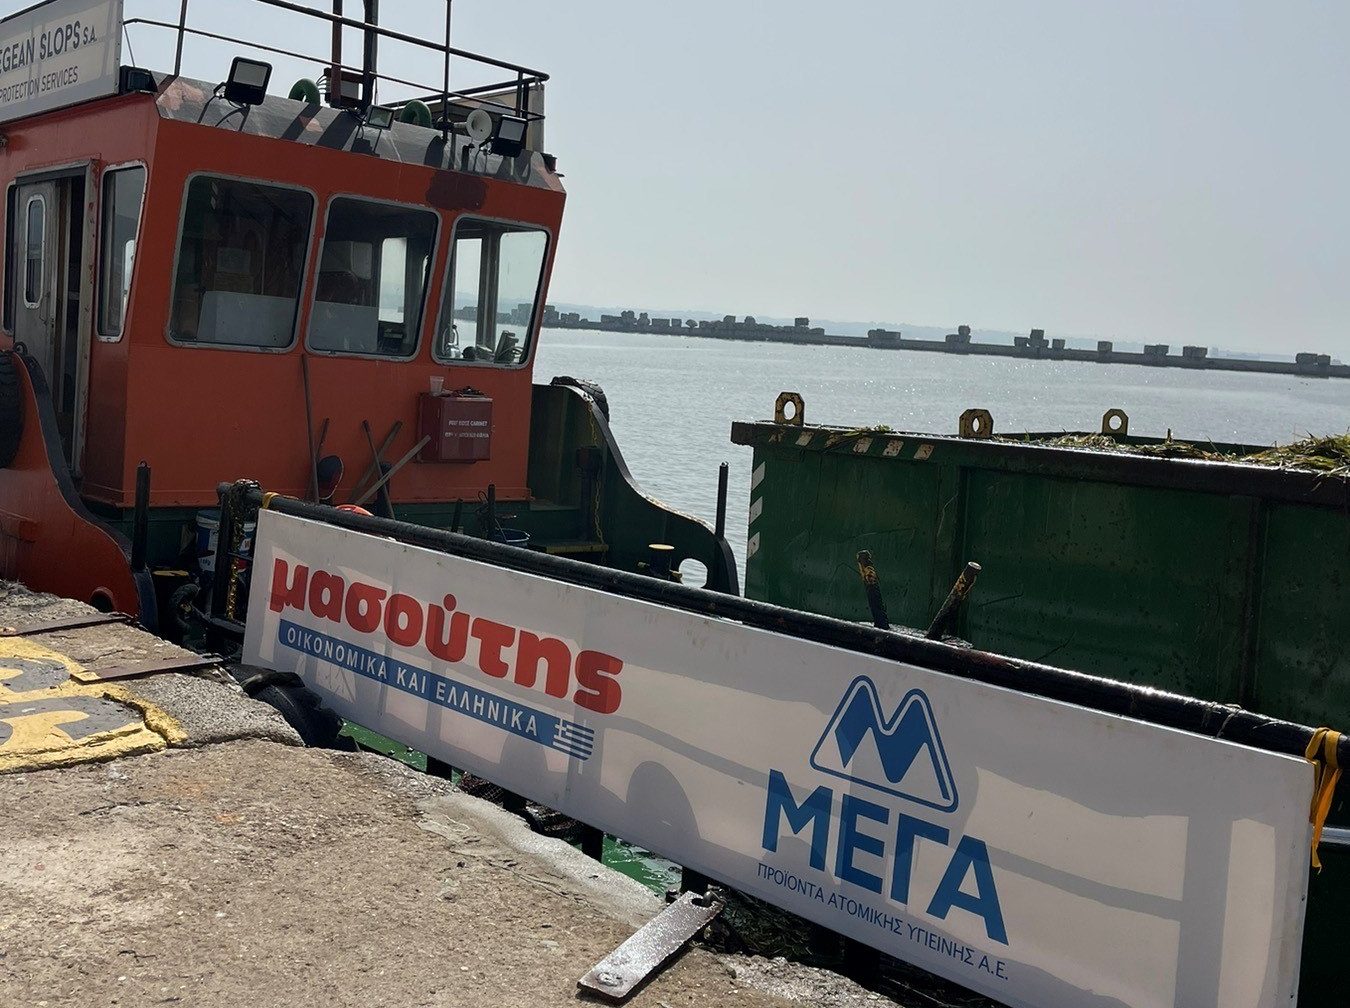 Θεσσαλονίκη: Συνεχίζεται ο καθαρισμός του Θερμαϊκού με ειδικό αντιρρυπαντικό σκάφος - Τι θα συλλέγει